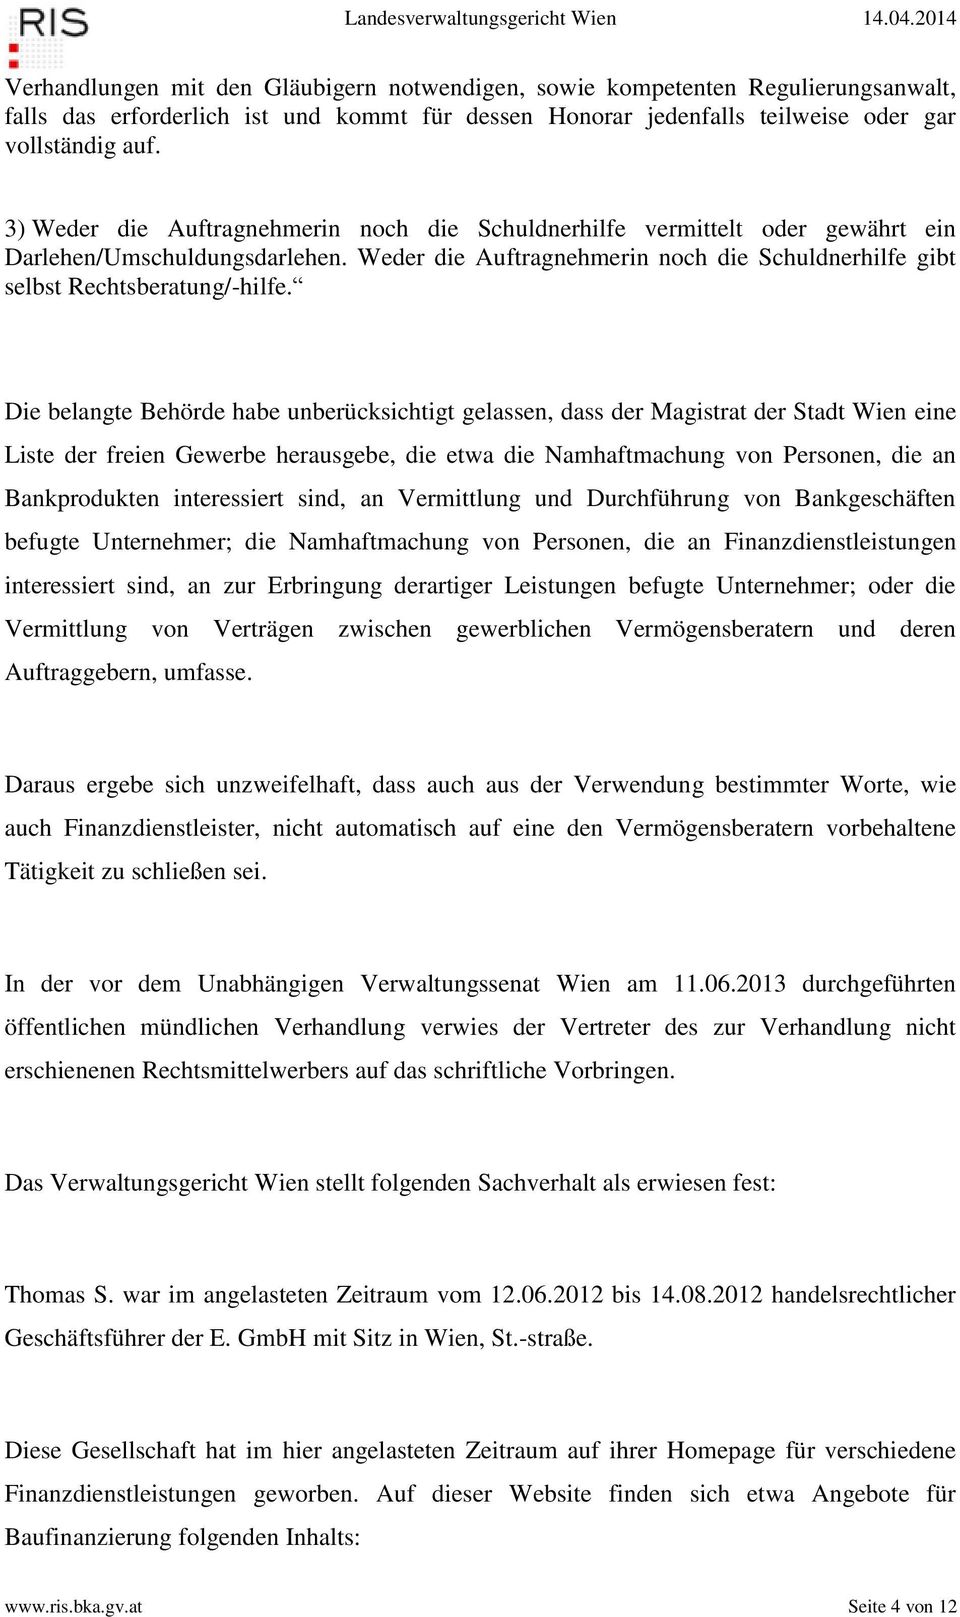 Die belangte Behörde habe unberücksichtigt gelassen, dass der Magistrat der Stadt Wien eine Liste der freien Gewerbe herausgebe, die etwa die Namhaftmachung von Personen, die an Bankprodukten